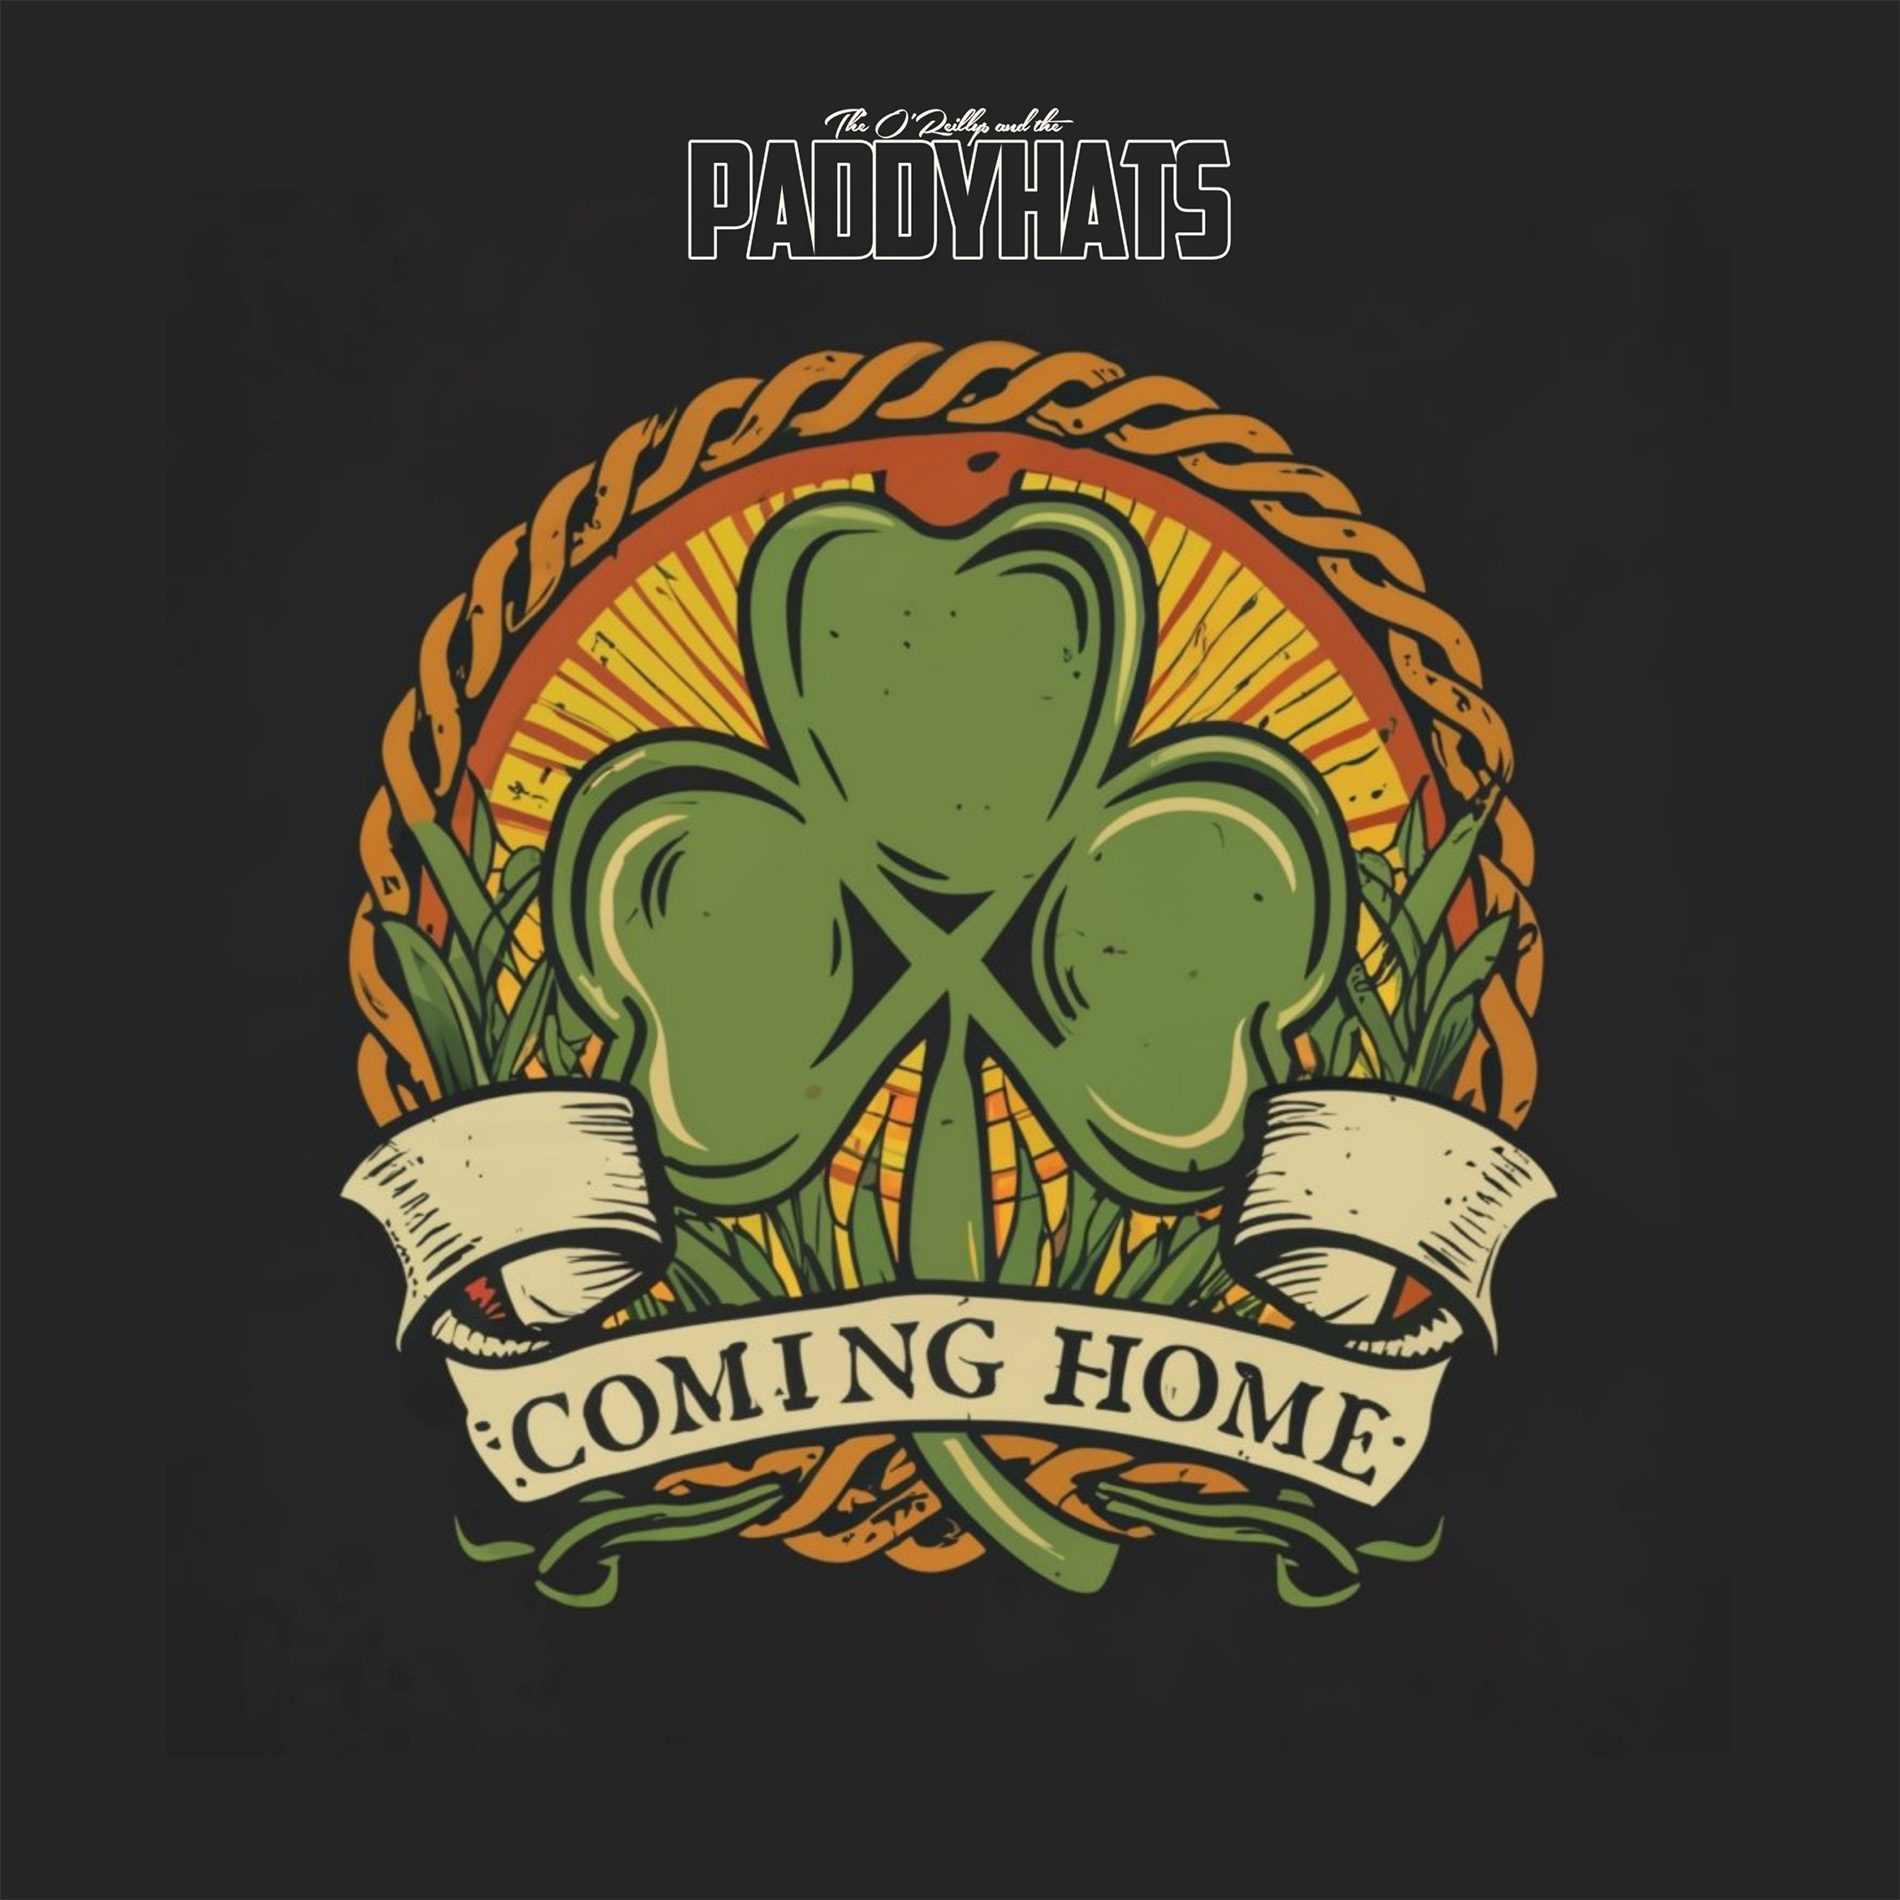 Du willst die grünste Nacht des Jahres? – Dann gib dir unsere neue Single „Coming Home For St. Patrick’s Day“